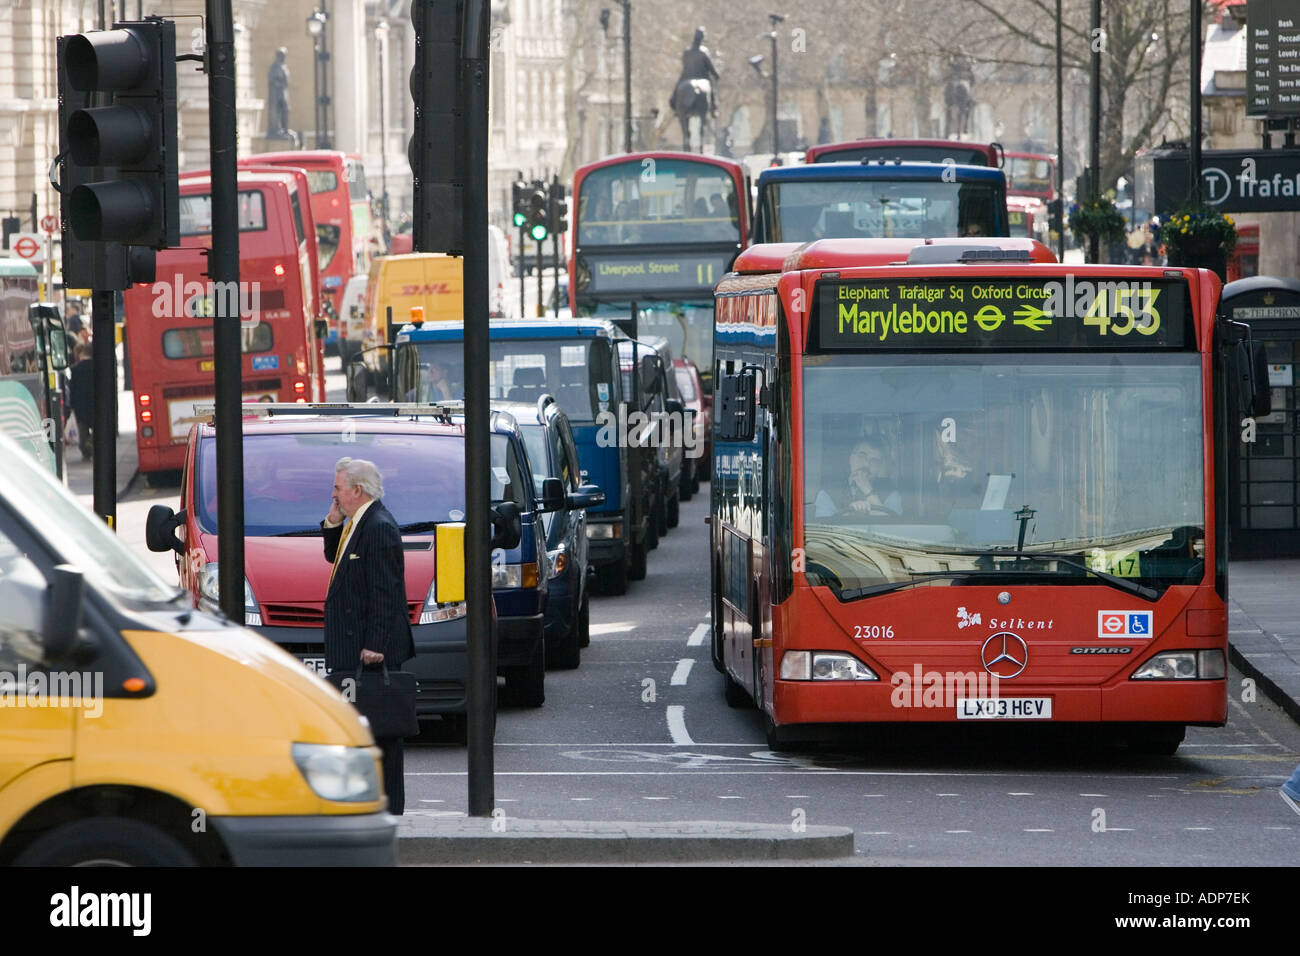 Le trafic lourd à l'arrêt aux feux de circulation à Trafalgar Square Londres Angleterre Royaume-uni centre-ville Banque D'Images